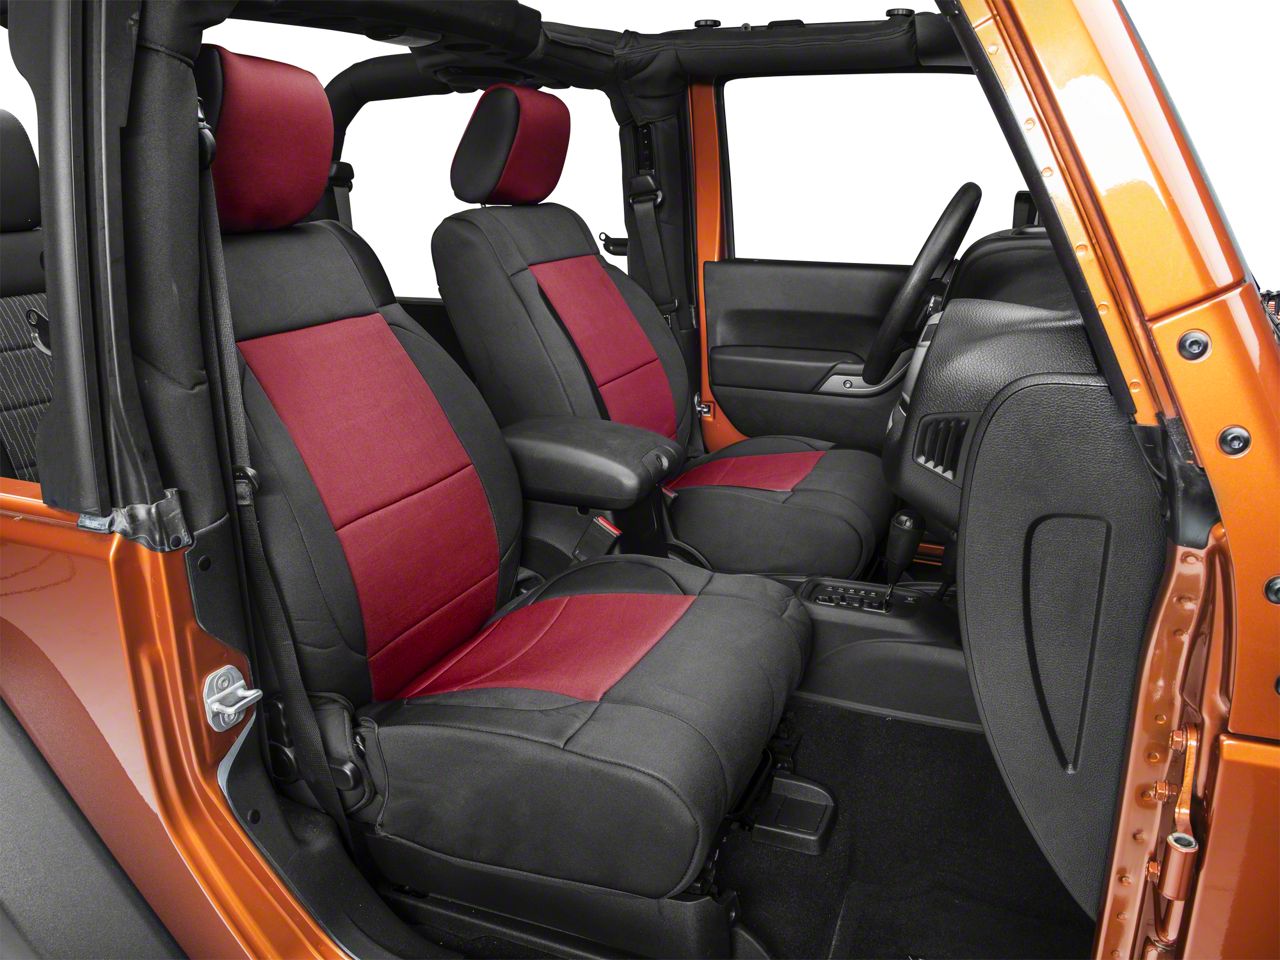 Black 469-01 Smittybilt Neoprene Rear Seat Cover for 07-10 Wrangler JK 2-Door